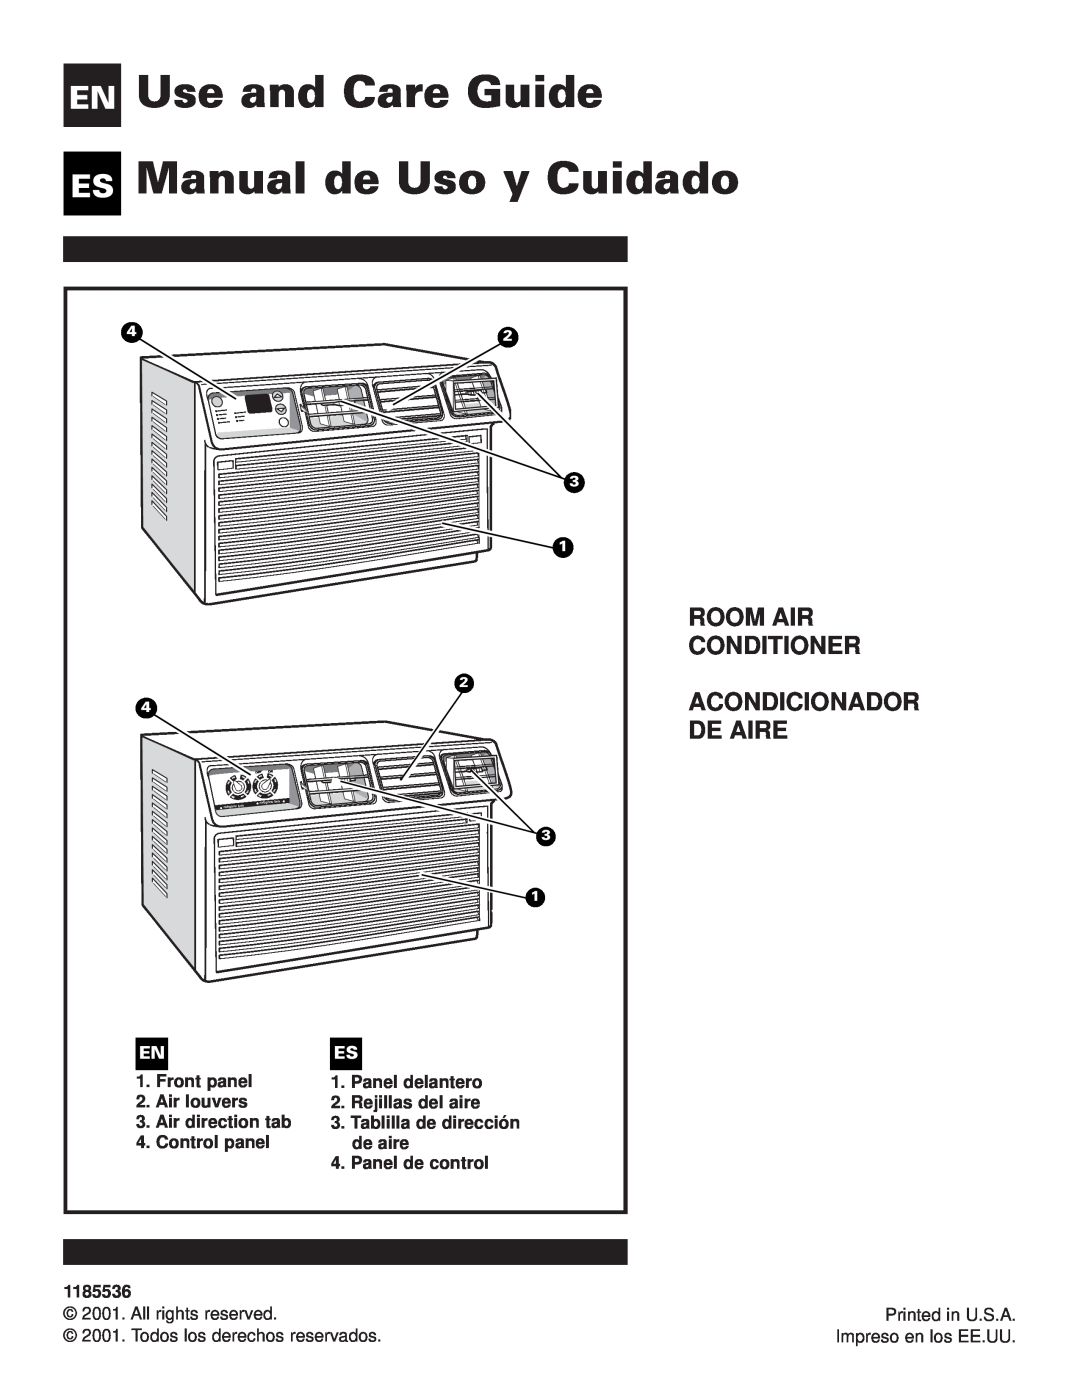 Whirlpool ACE184XL0 manual Use and Care Guide Manual de Uso y Cuidado, En Es, Room Air Conditioner Acondicionador De Aire 